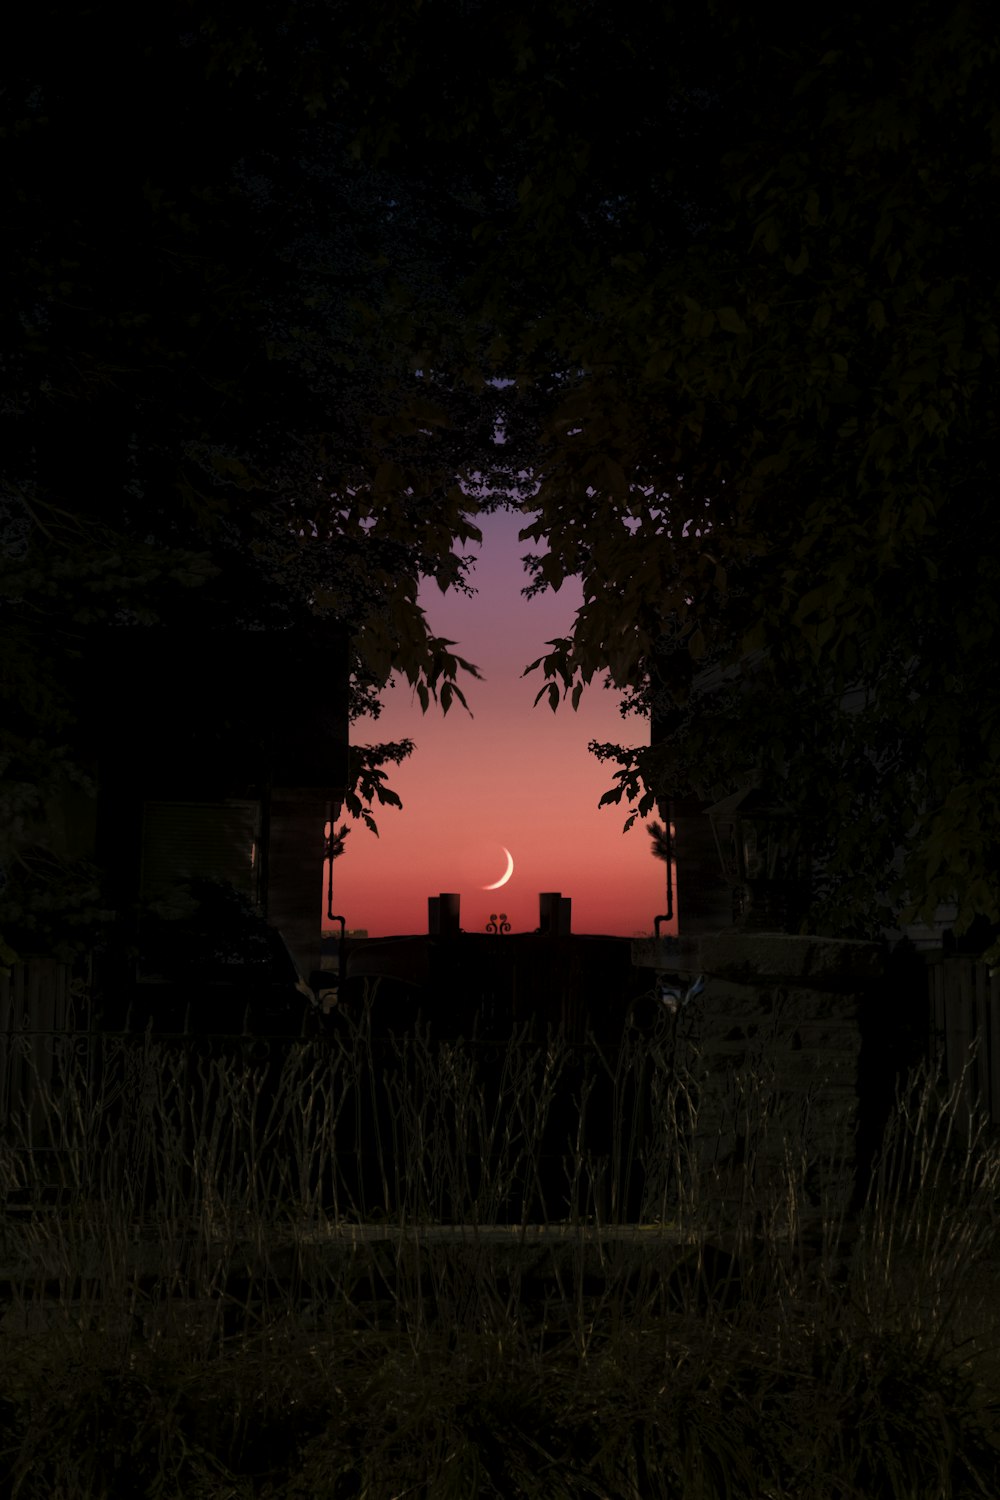 Ein Blick auf den Mond durch ein Fenster in der Nacht